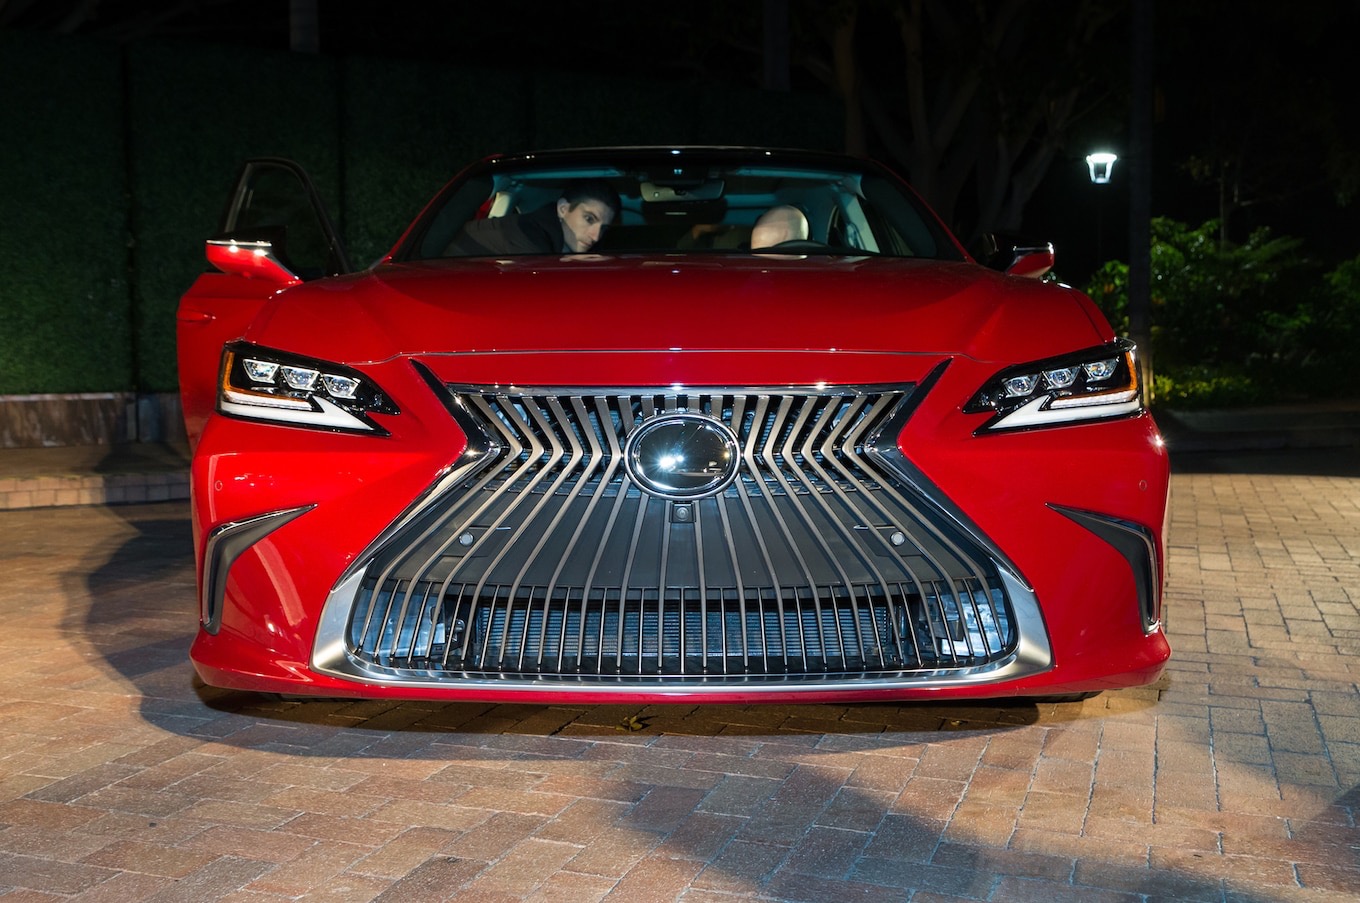 Lexus ES 2019 - обновление или революция?